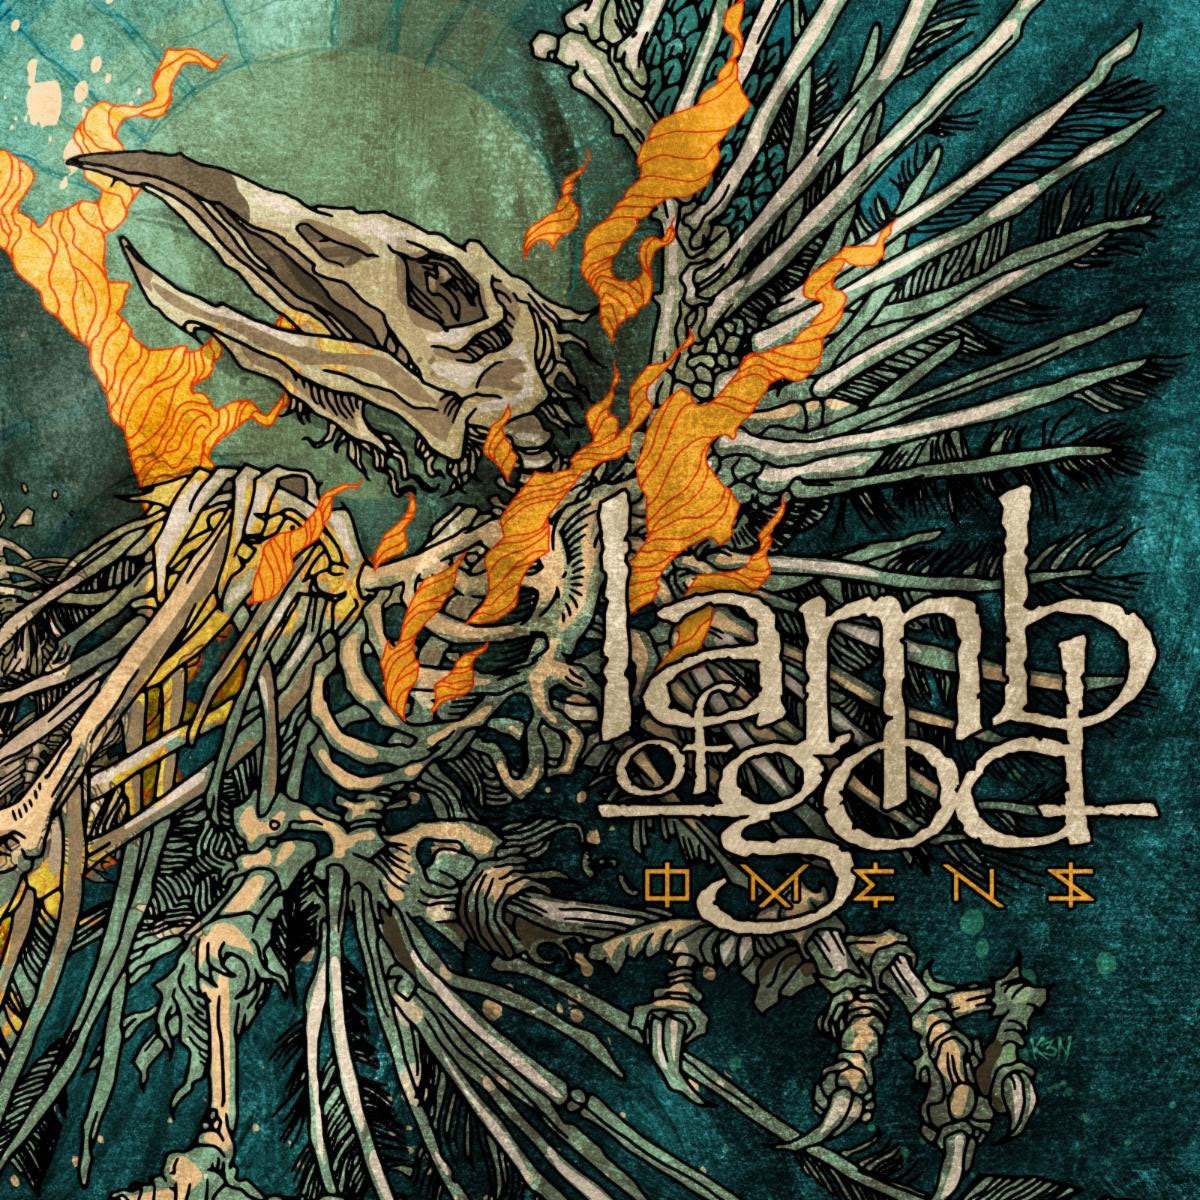 lamb-of-god-omens-album-cover.jpg